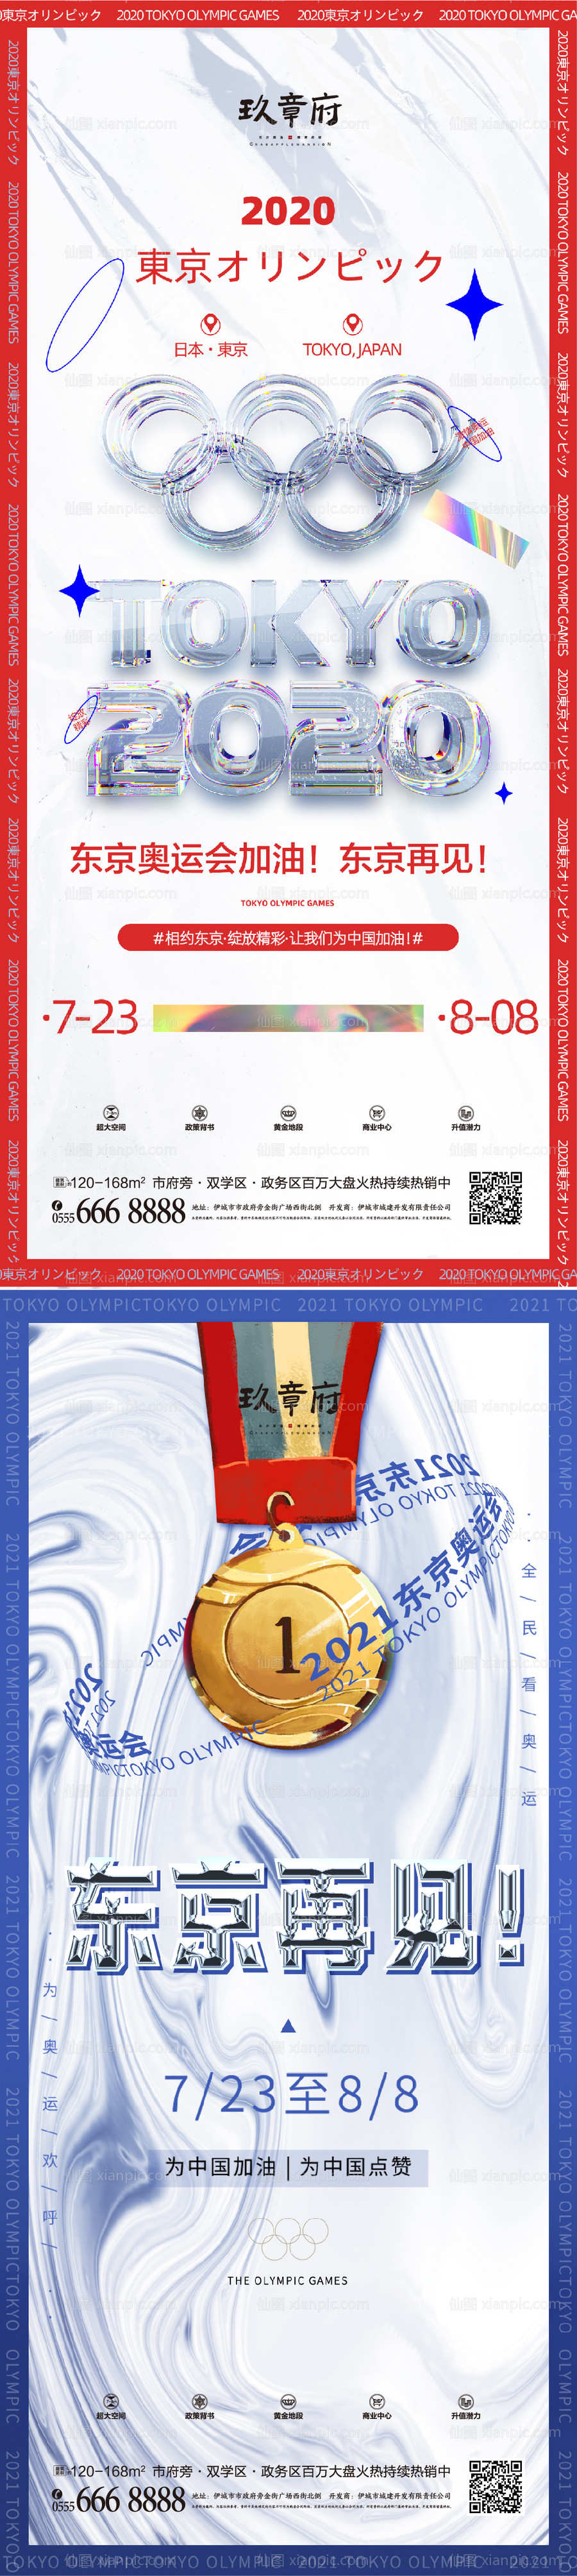 素材乐-东京奥运会宣传海报